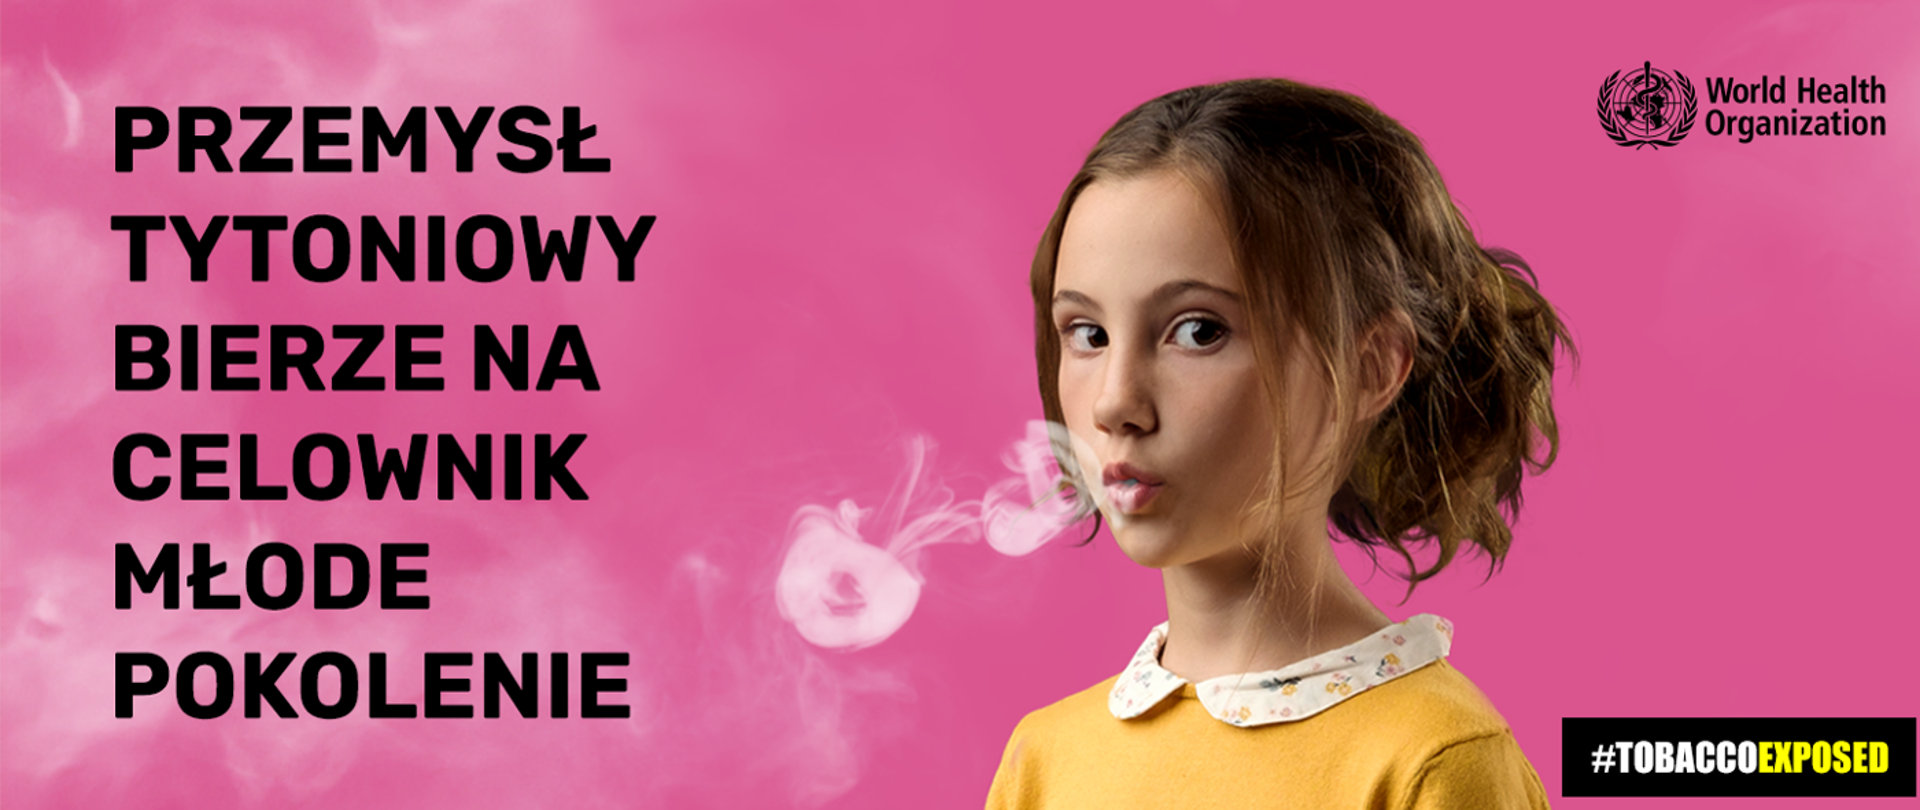 Grafika przedstawia dziewczynkę w żółtej bluzie na różowym tle, paląca e-papierosa.